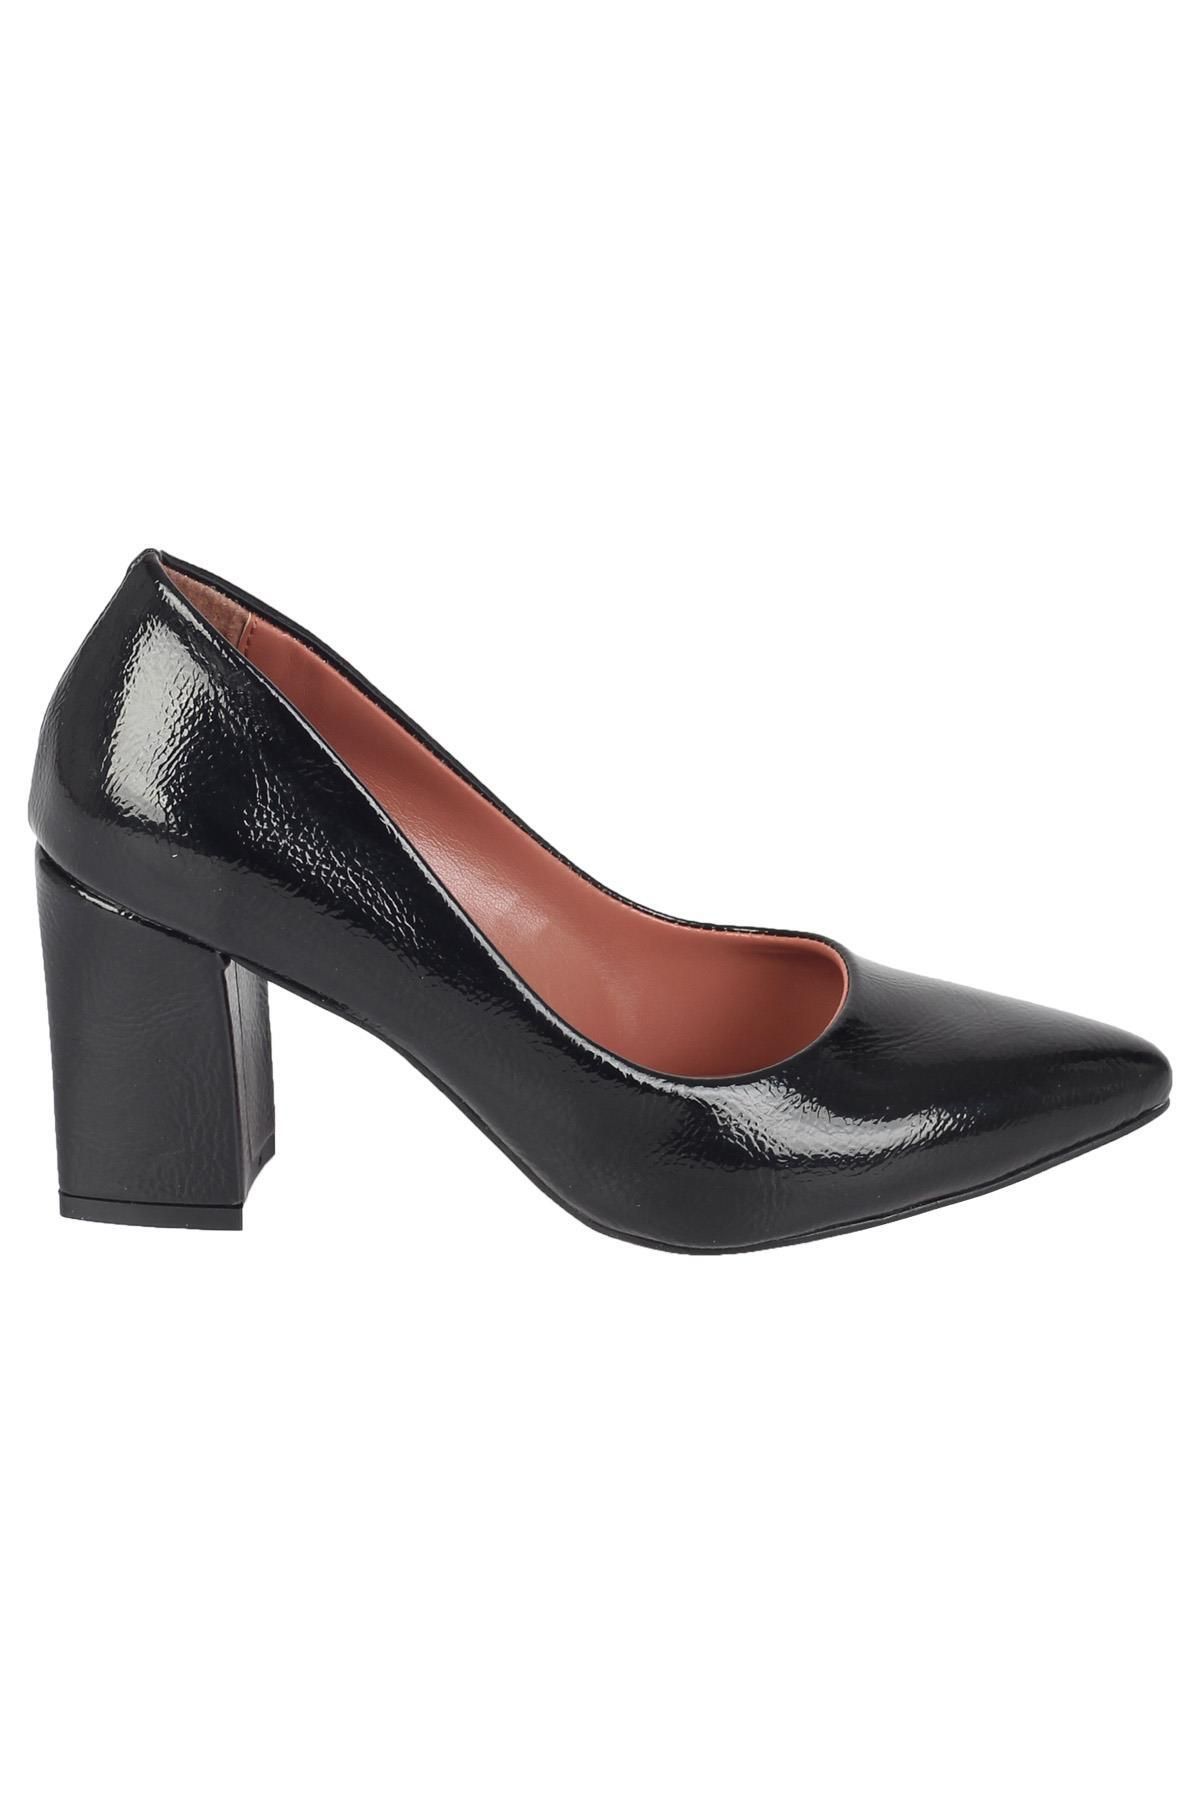 Modabuymus Siyah Rugan Kalın Topuk Stiletto Kadın Ayakkabı - Erkly